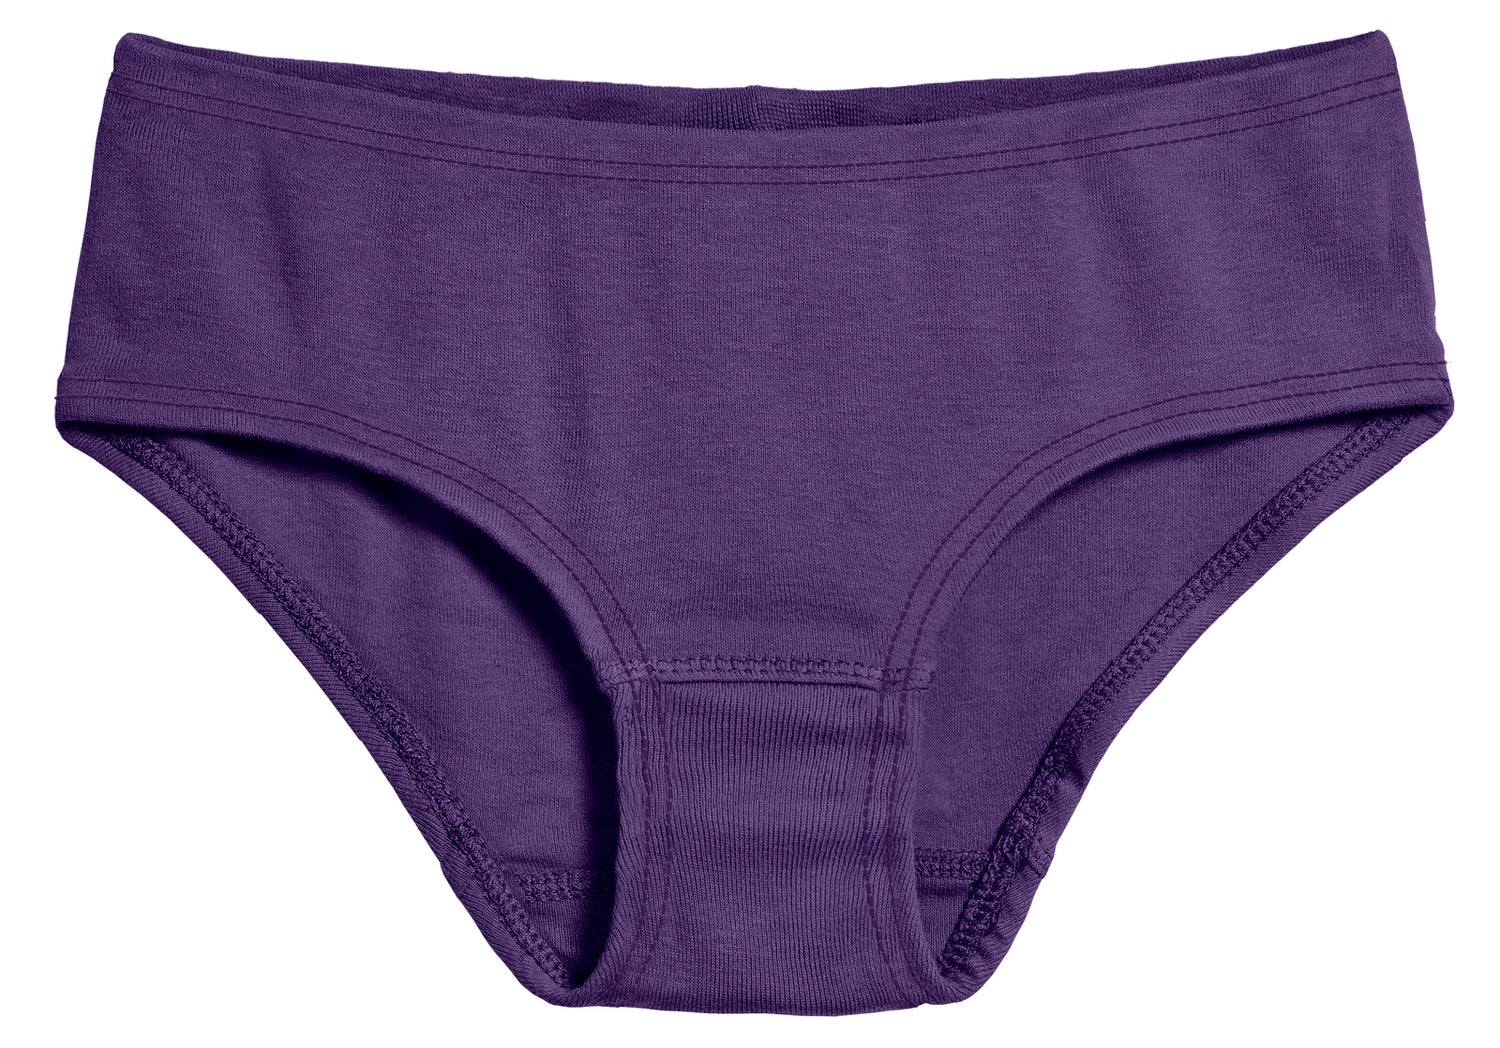  #getknotty Knotty Underwear - Lavender Cotton Brief